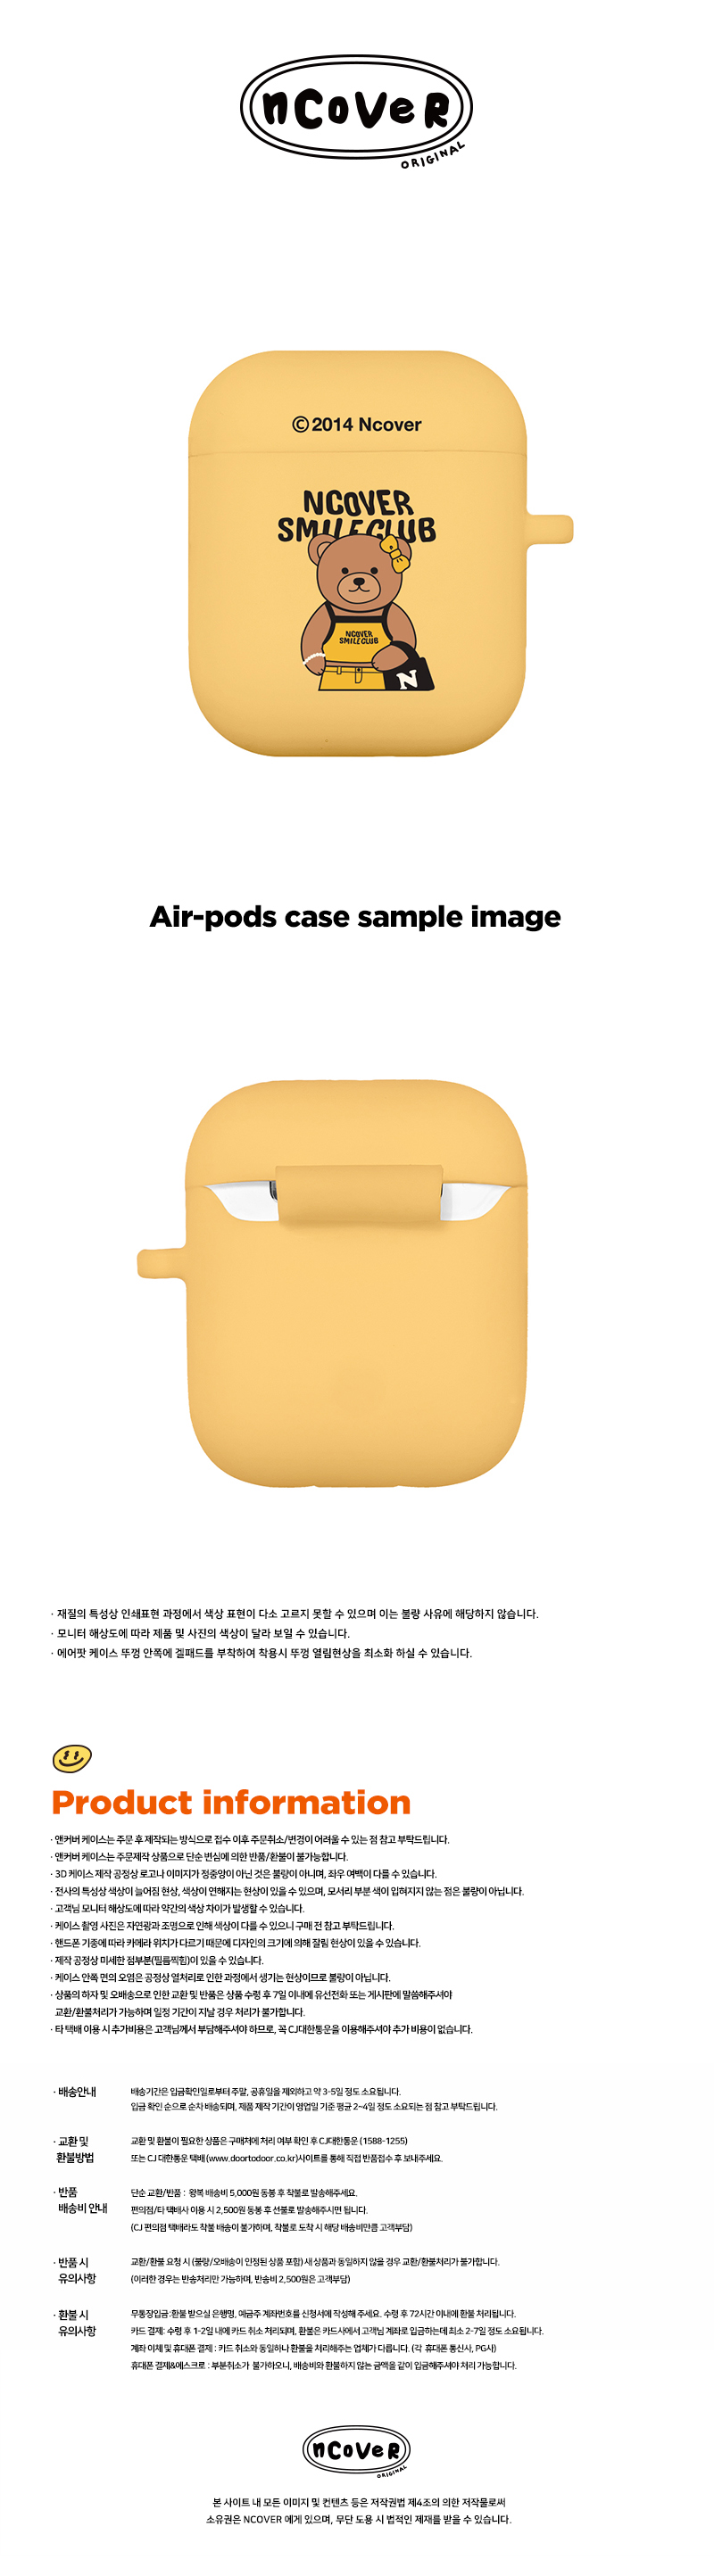 [호환용] Handbag bruin-yellow(airpods jelly)  15,000원 - 바이인터내셔널주식회사 디지털, 이어폰/헤드폰, 이어폰/헤드폰 액세서리, 에어팟/에어팟프로 케이스 바보사랑 [호환용] Handbag bruin-yellow(airpods jelly)  15,000원 - 바이인터내셔널주식회사 디지털, 이어폰/헤드폰, 이어폰/헤드폰 액세서리, 에어팟/에어팟프로 케이스 바보사랑